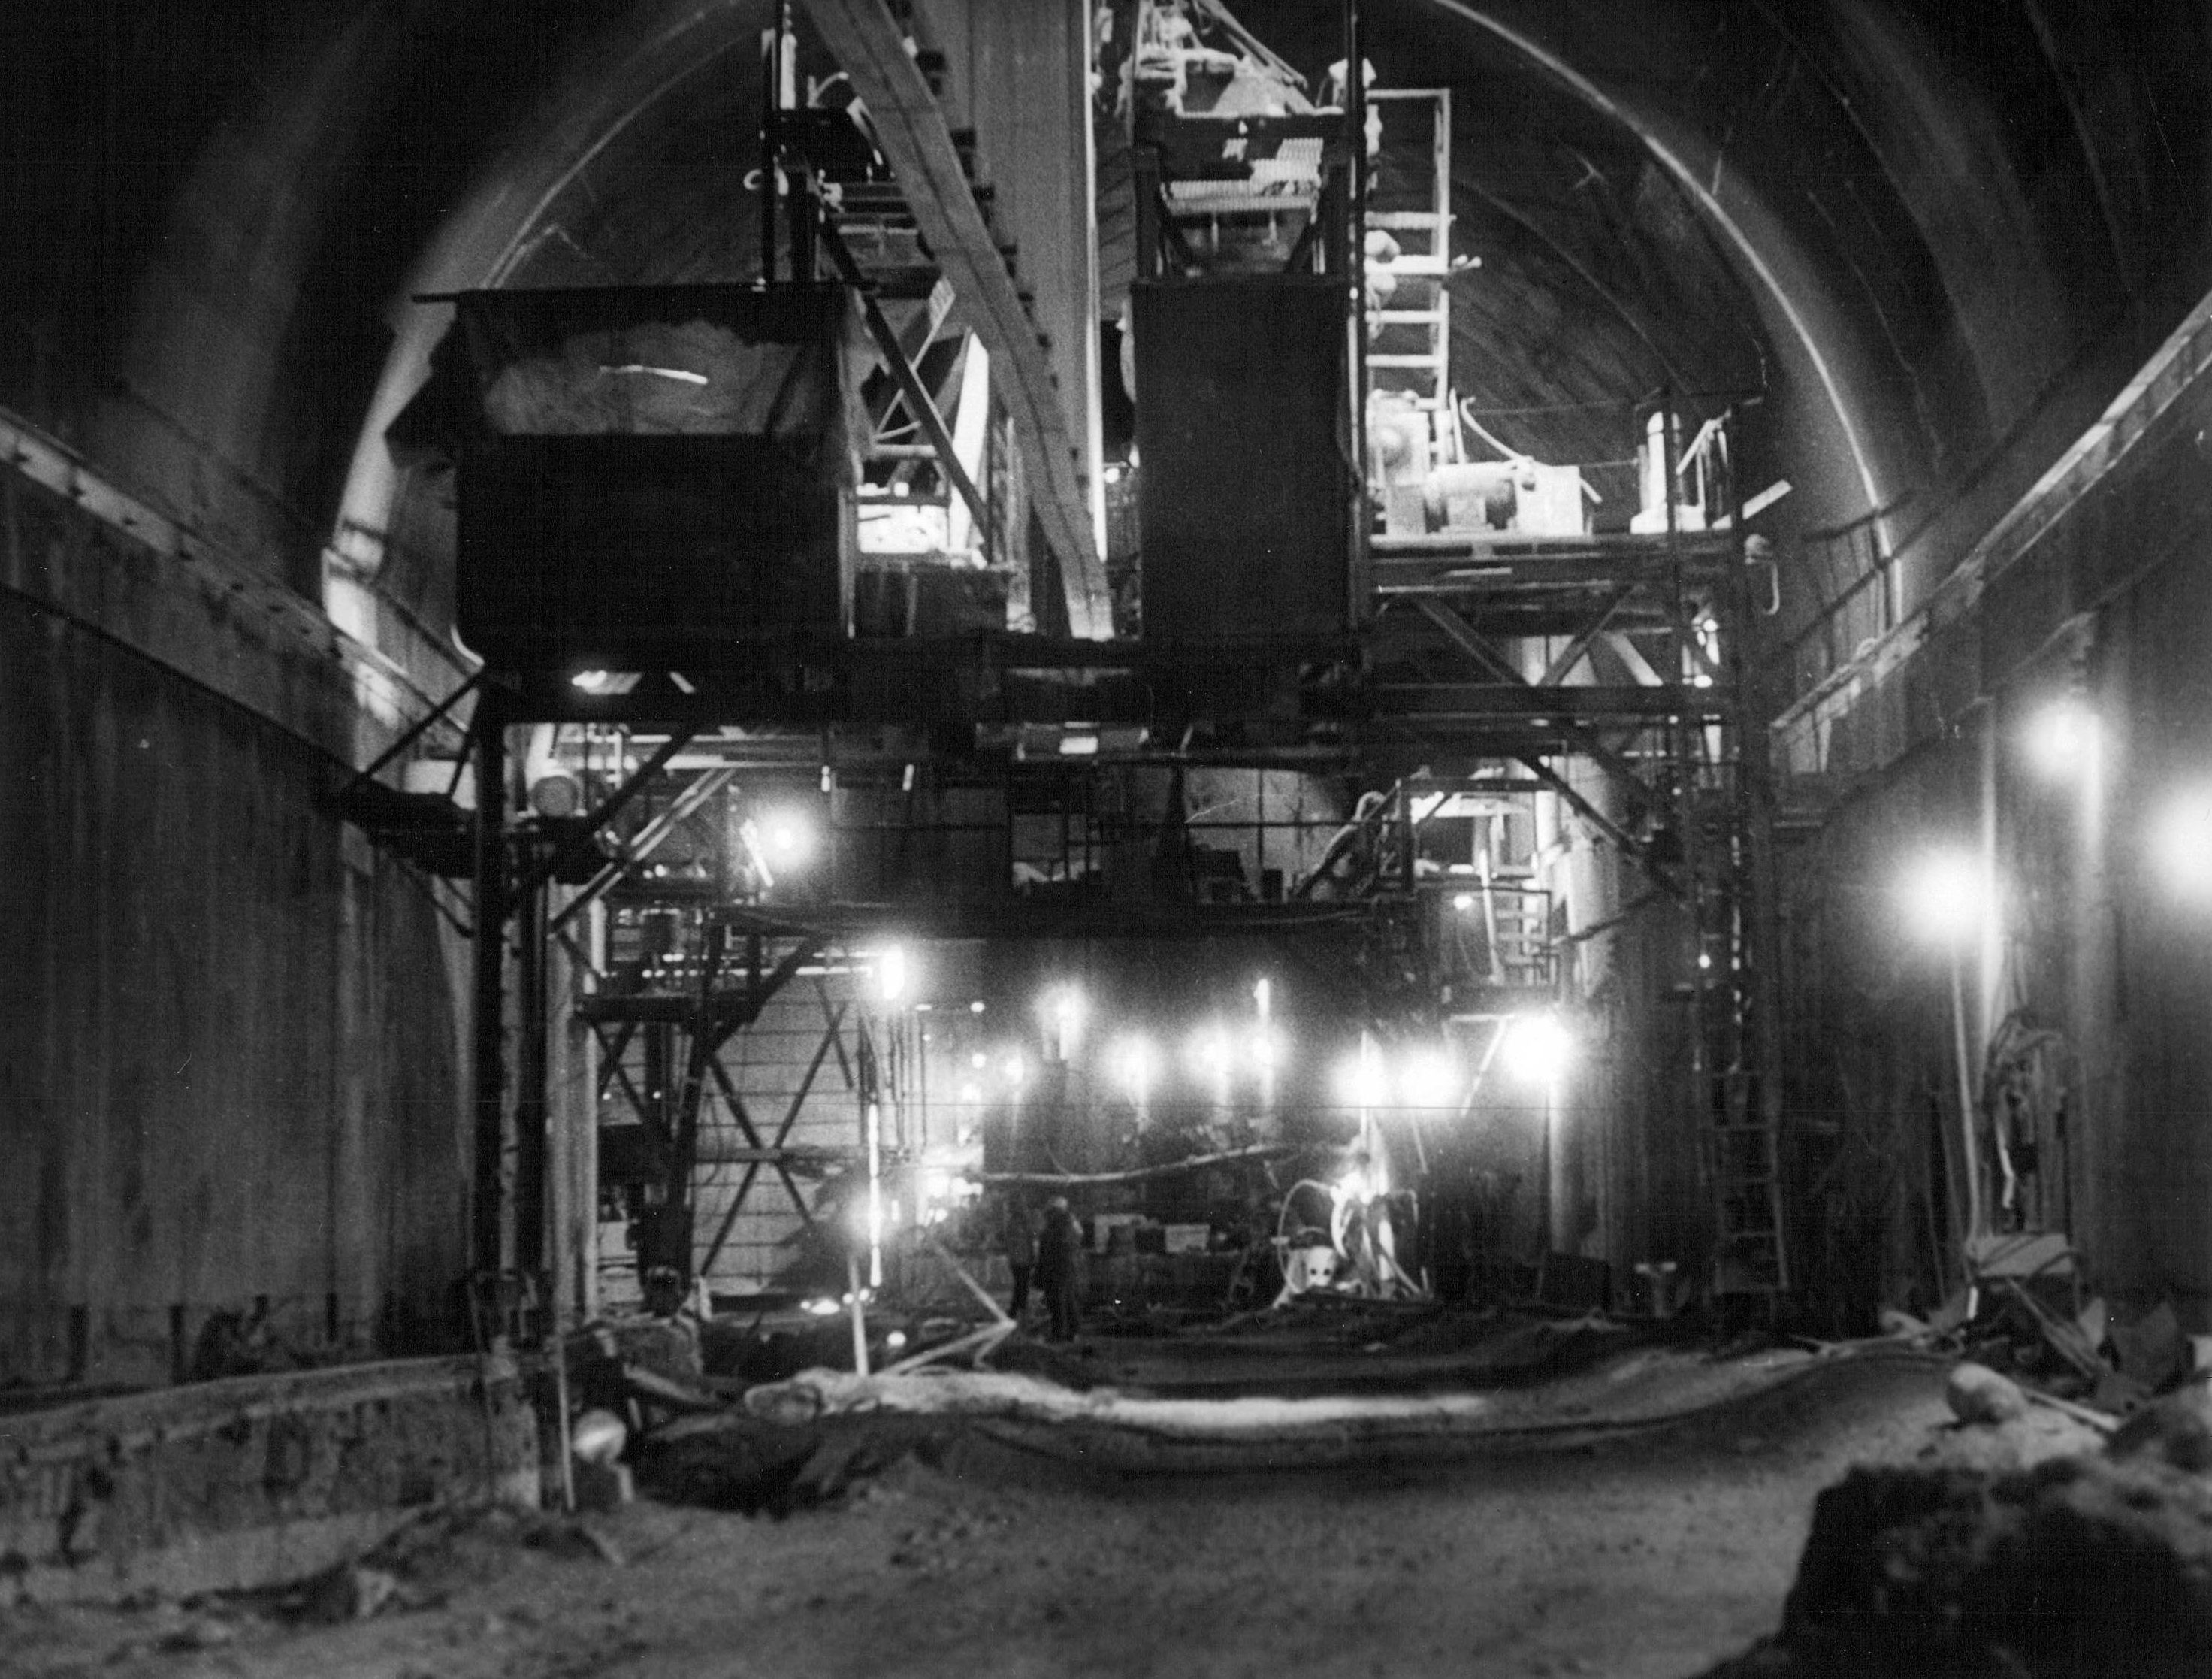 JAN 5 1973, 1-19-1973 Eisenhower Tunnel Credit: Denver Post (Denver Post via Getty Images)